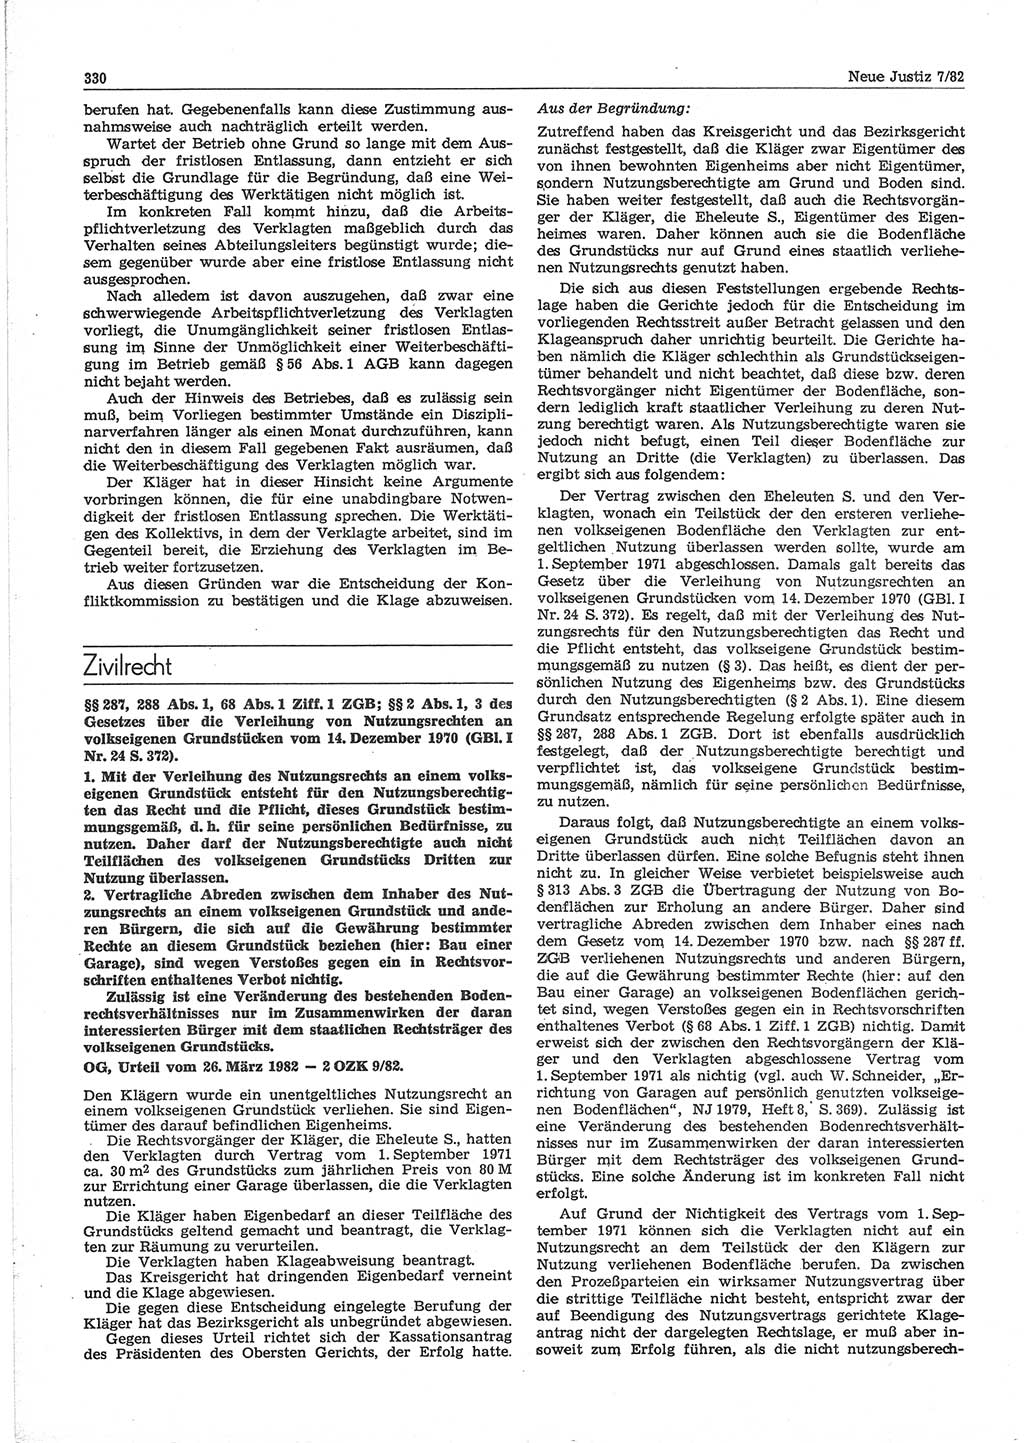 Neue Justiz (NJ), Zeitschrift für sozialistisches Recht und Gesetzlichkeit [Deutsche Demokratische Republik (DDR)], 36. Jahrgang 1982, Seite 330 (NJ DDR 1982, S. 330)